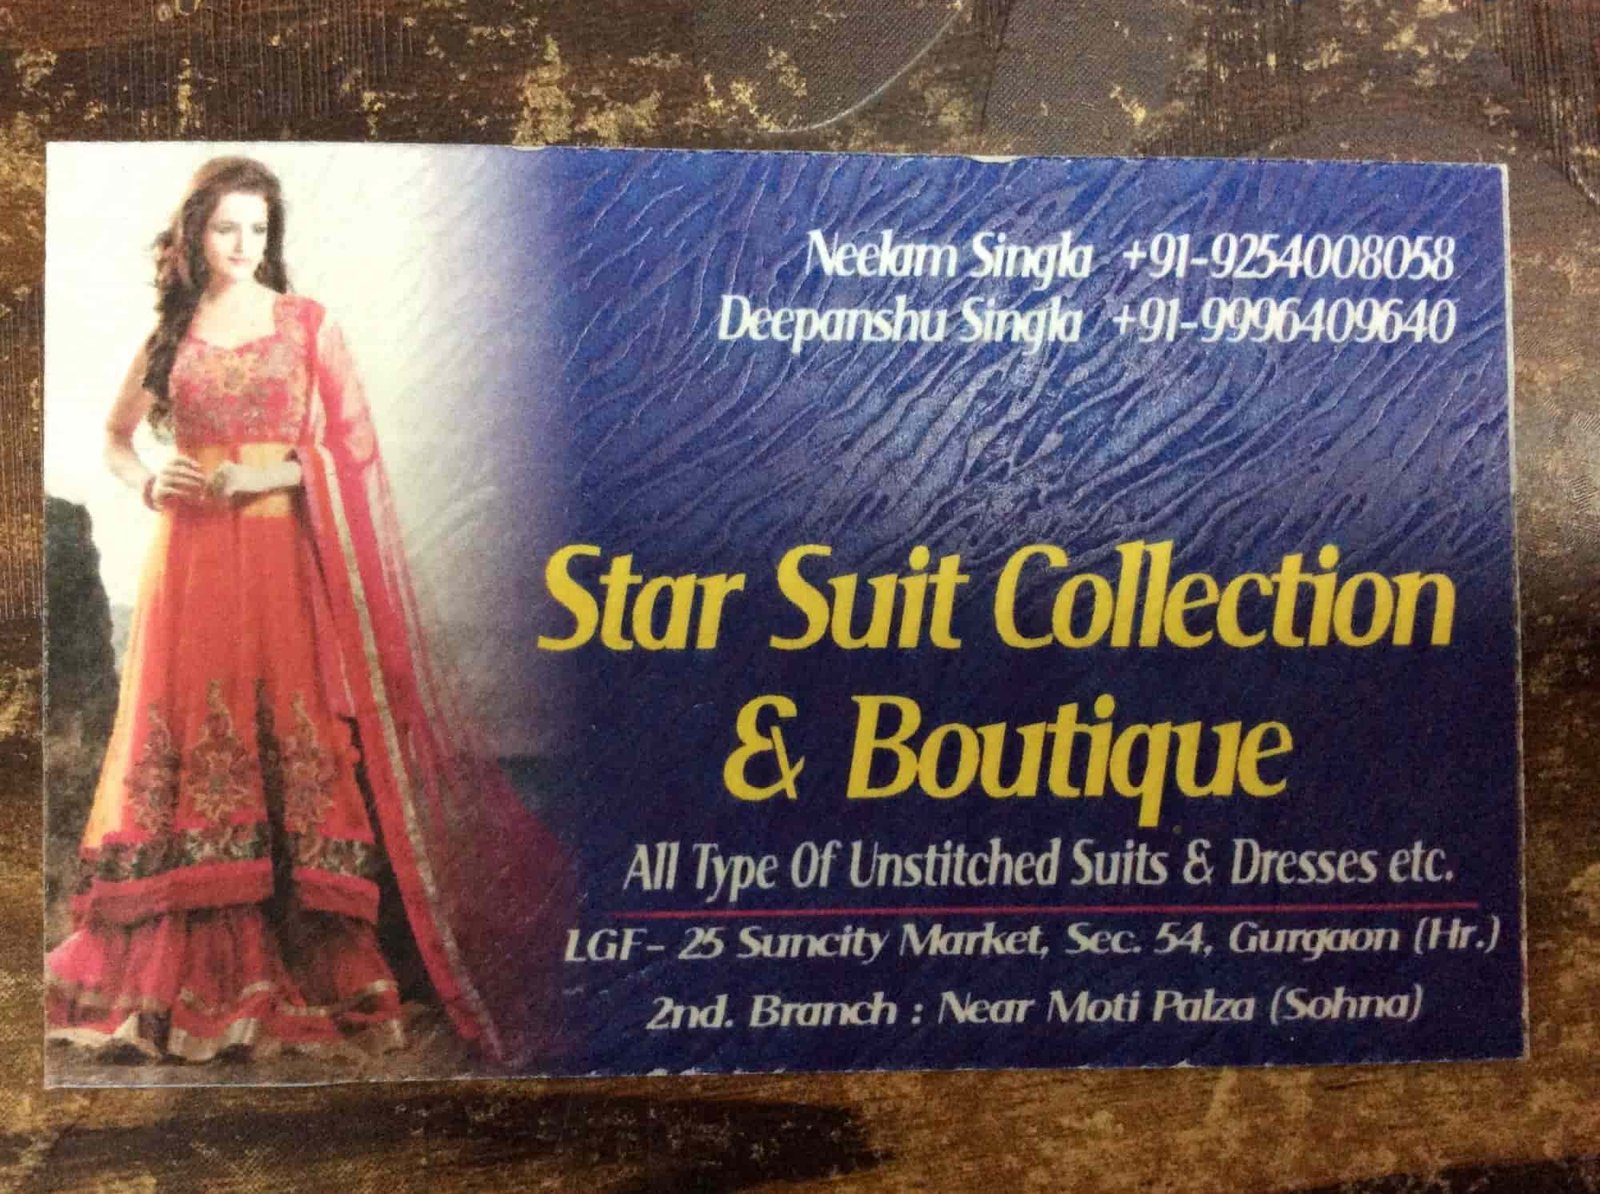 Star Suit Collection & Boutique